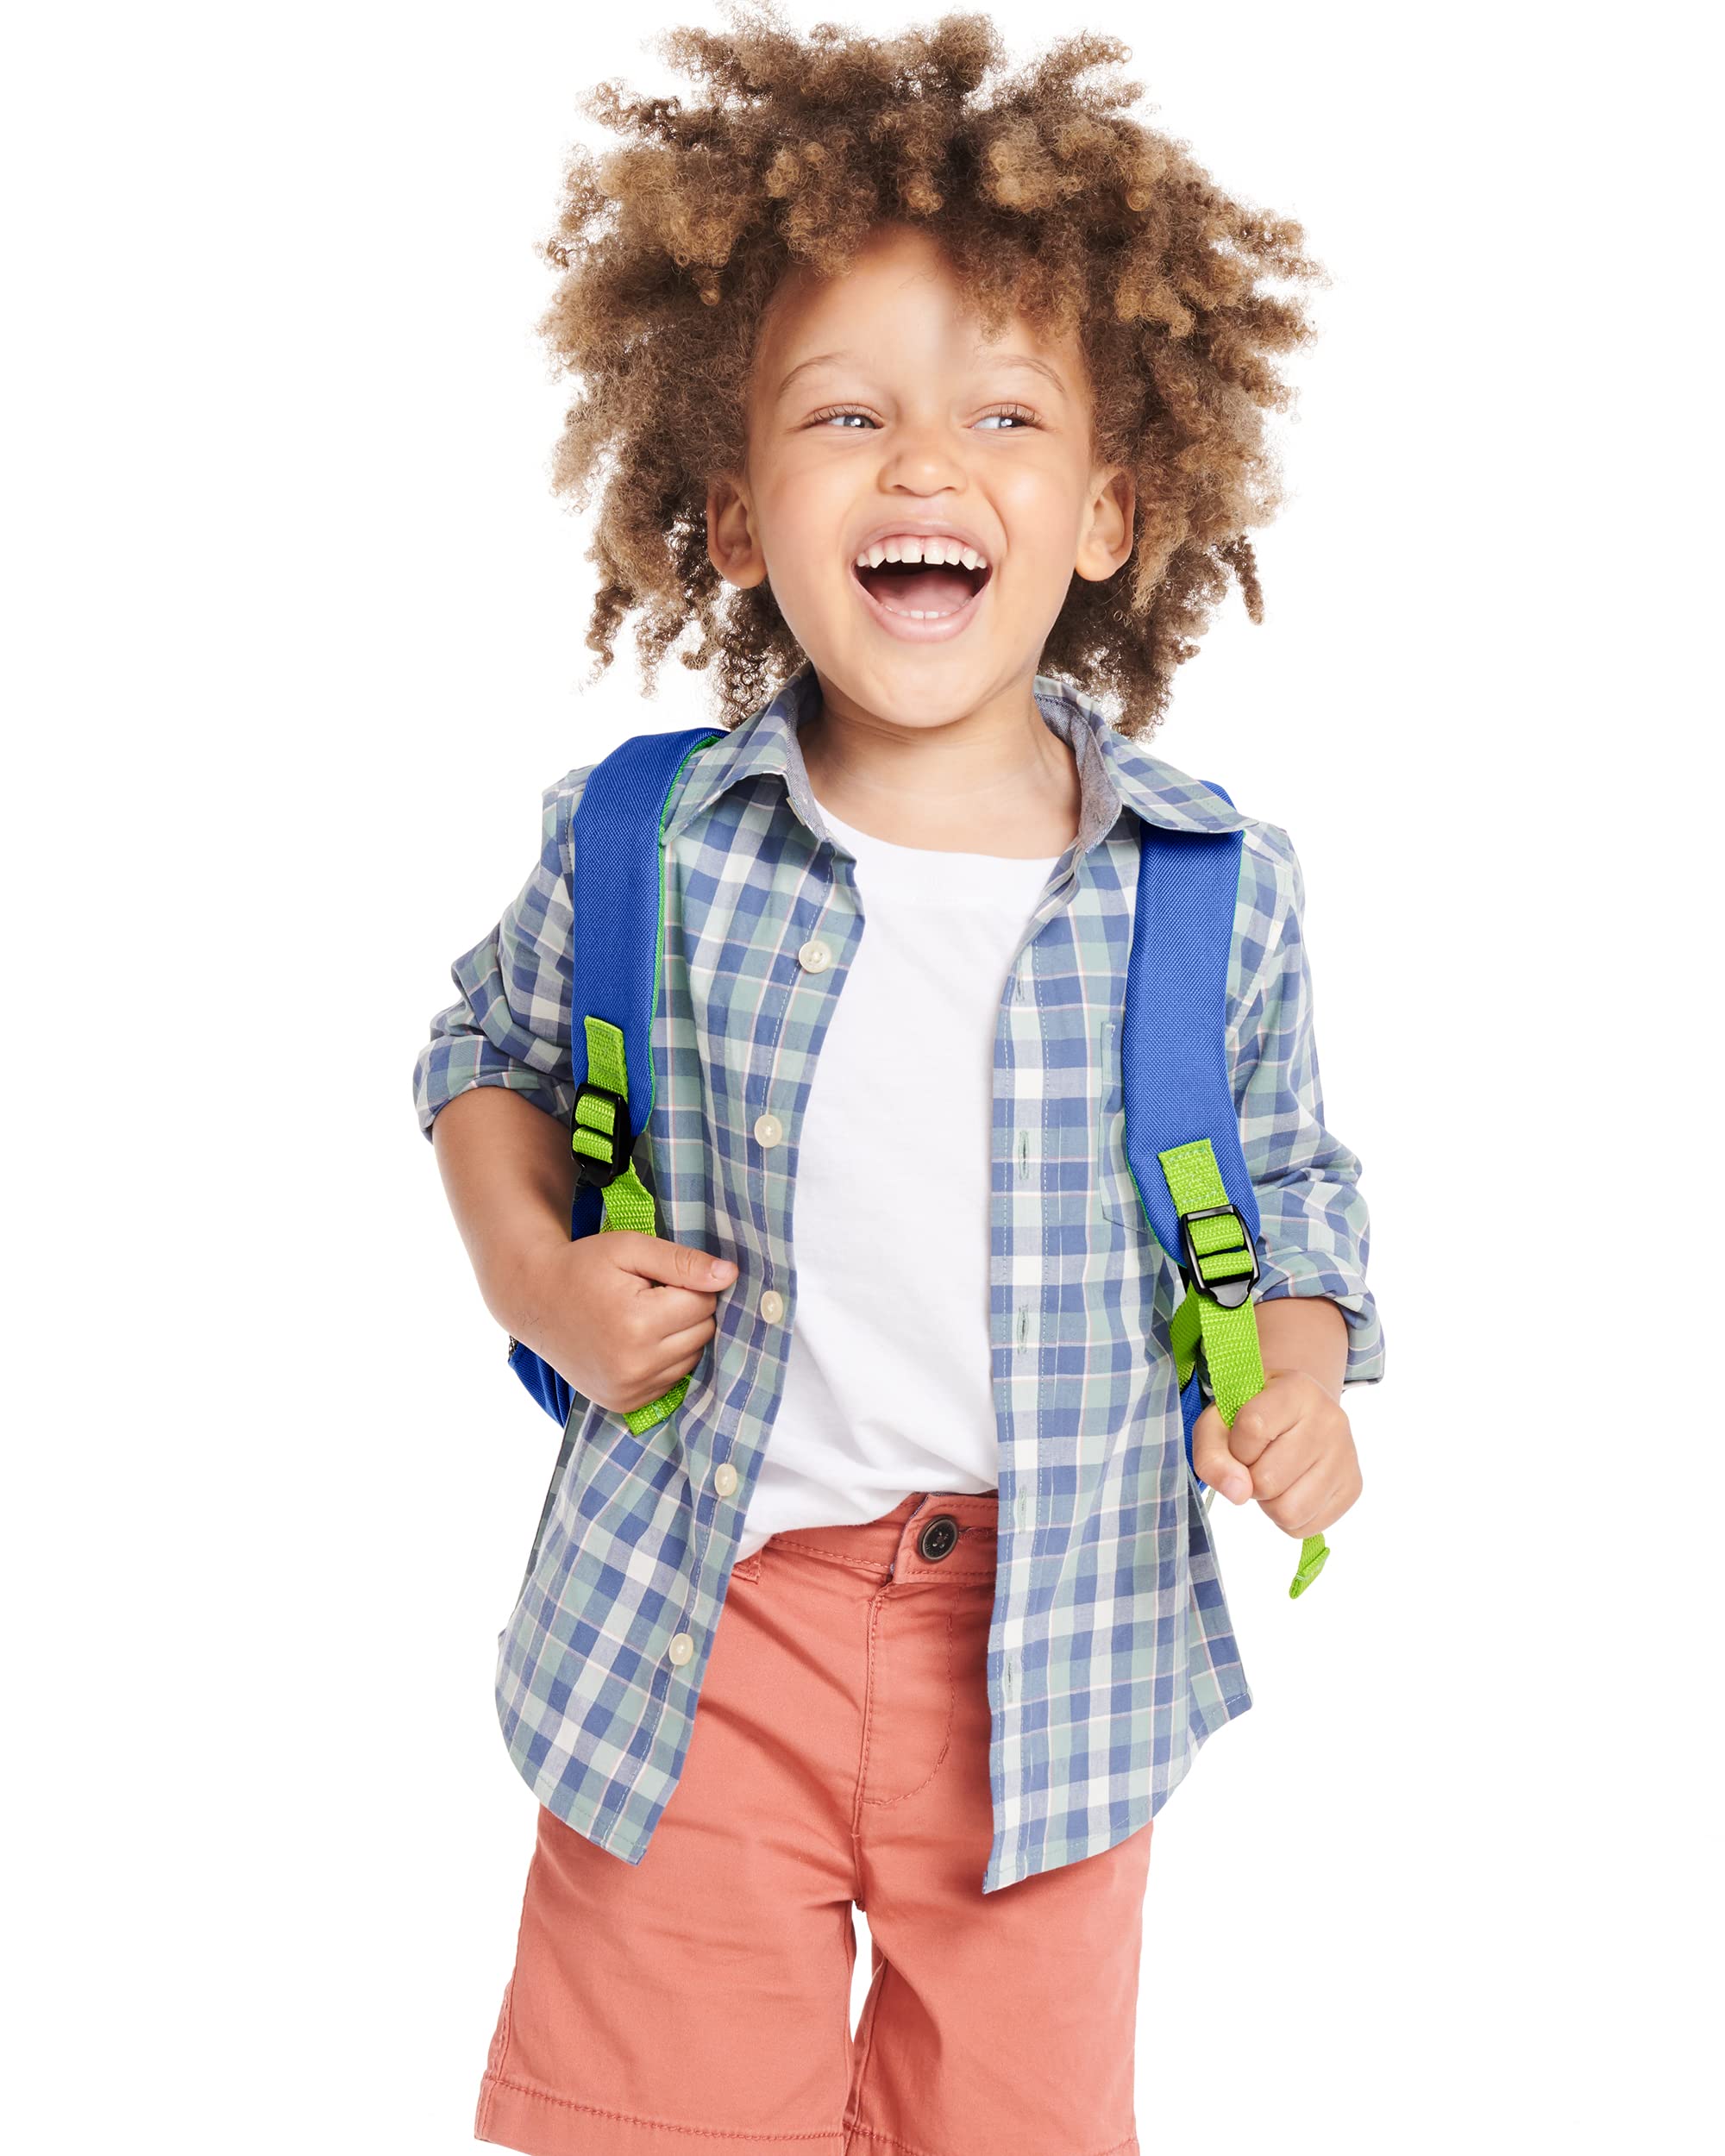 Skip Hop Toddler Backpack, Zoo Preschool Ages 3-4, Dinosaur